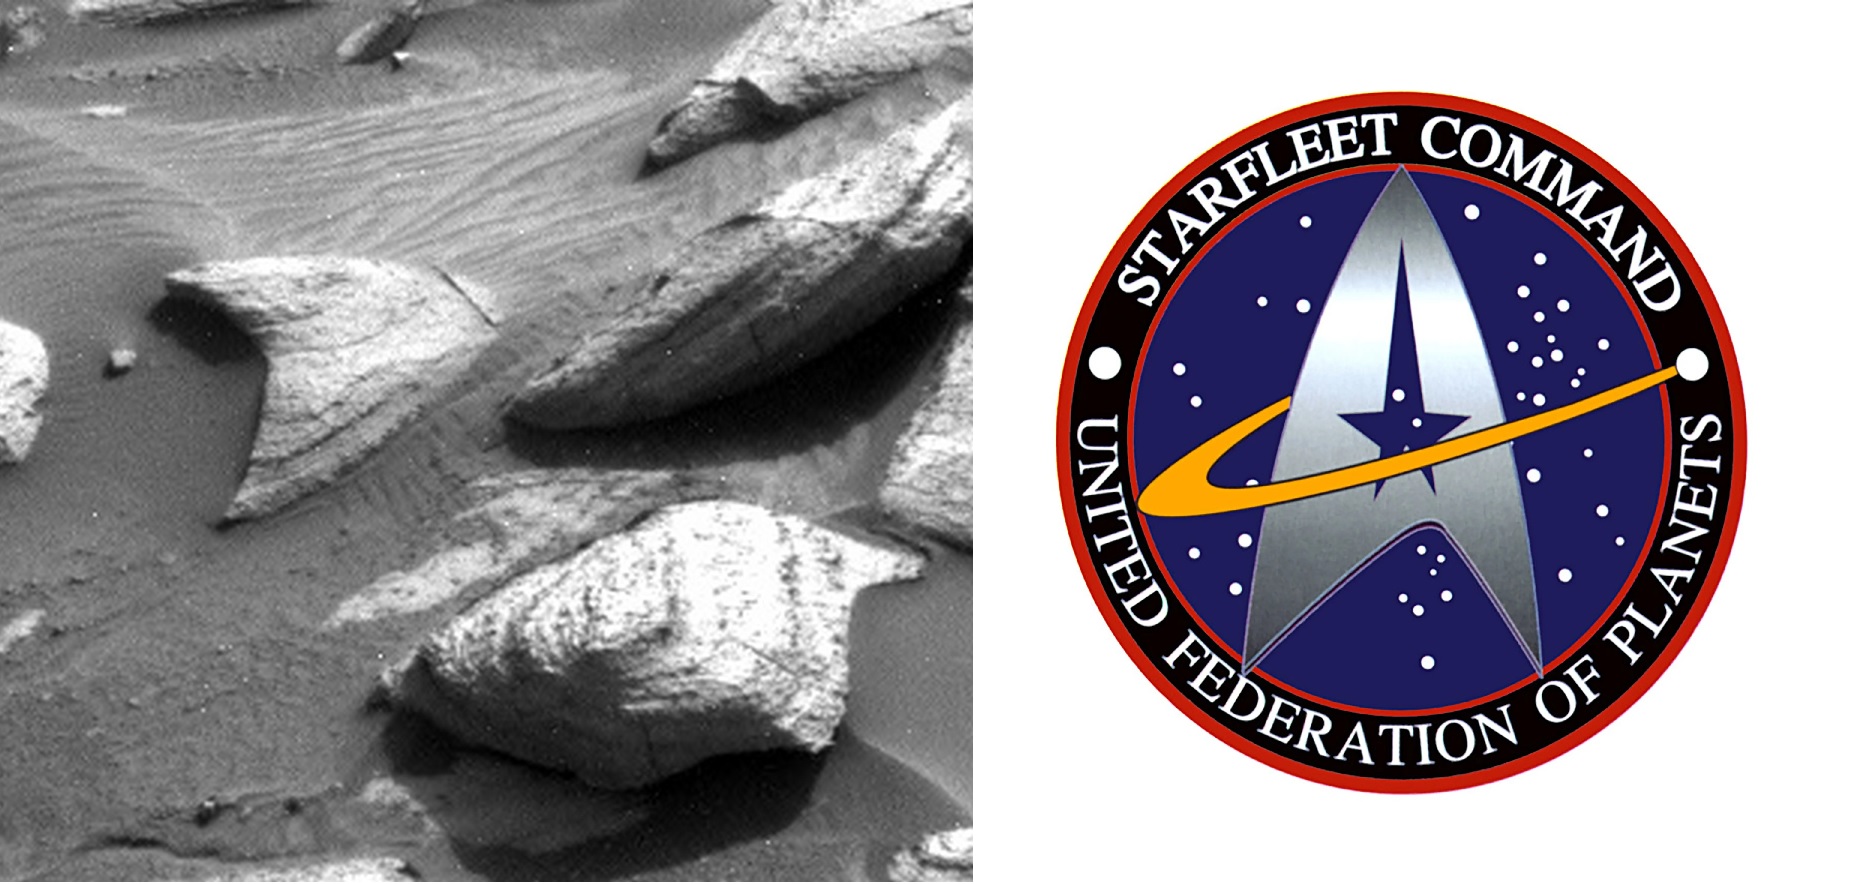 À esquerda, a rocha em forma de delta, lembrando o símbolo da Frota Estelar, à esquerda.